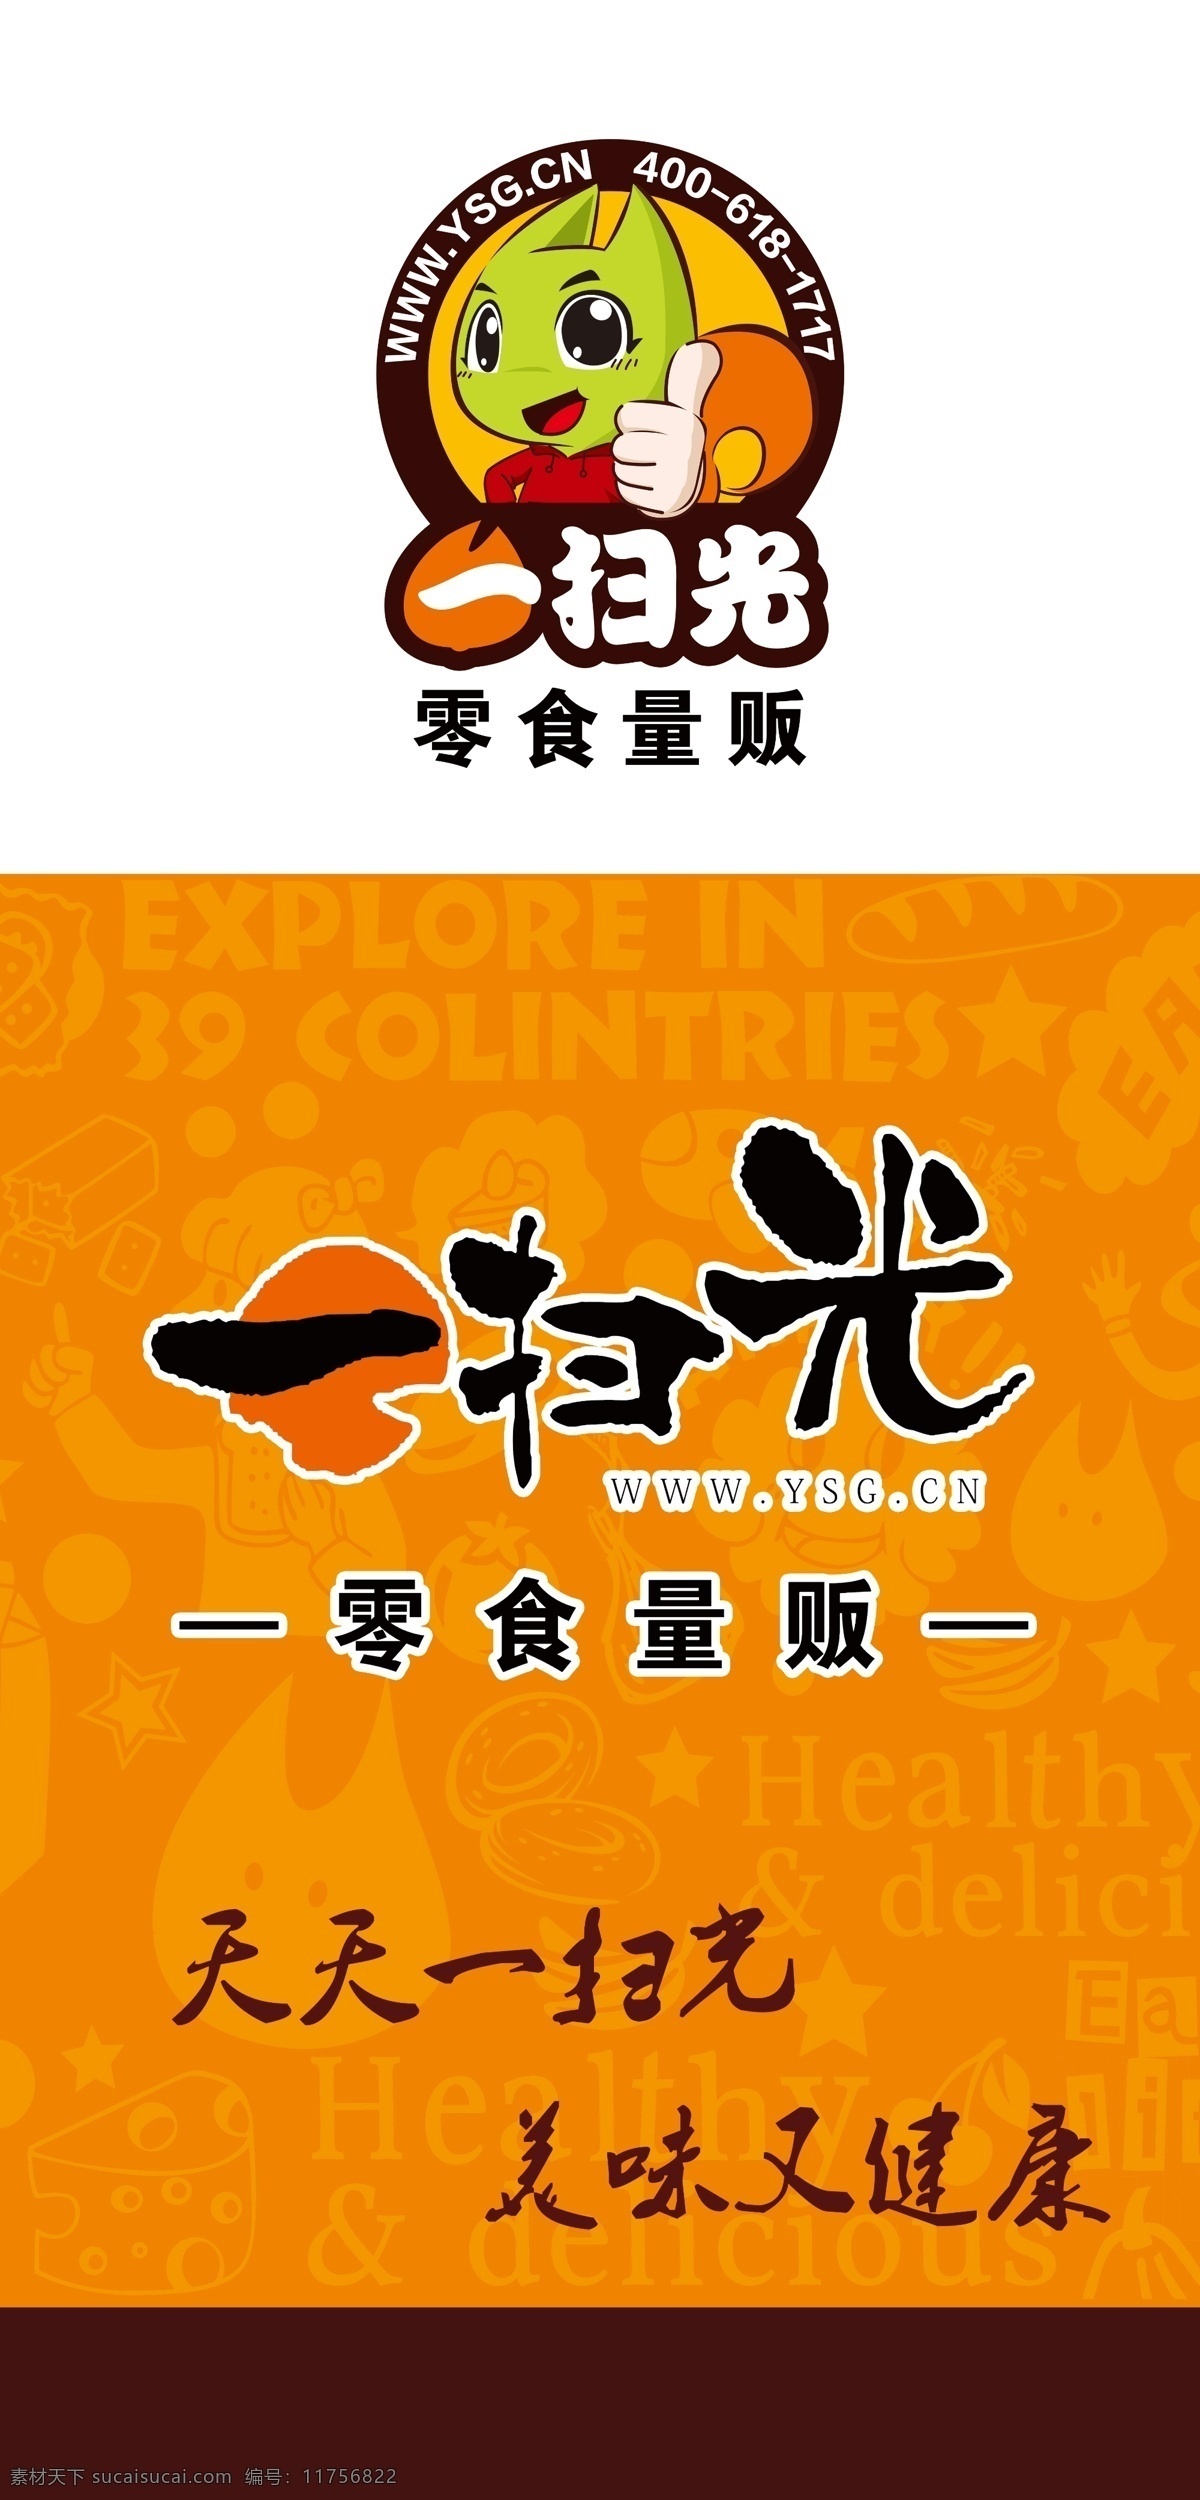 扫 光 logo 人物矢量 食物矢量 糕点矢量 文化艺术 零食 李湘 代言 包装袋 广告宣传 展架 海报 标志 休闲食品